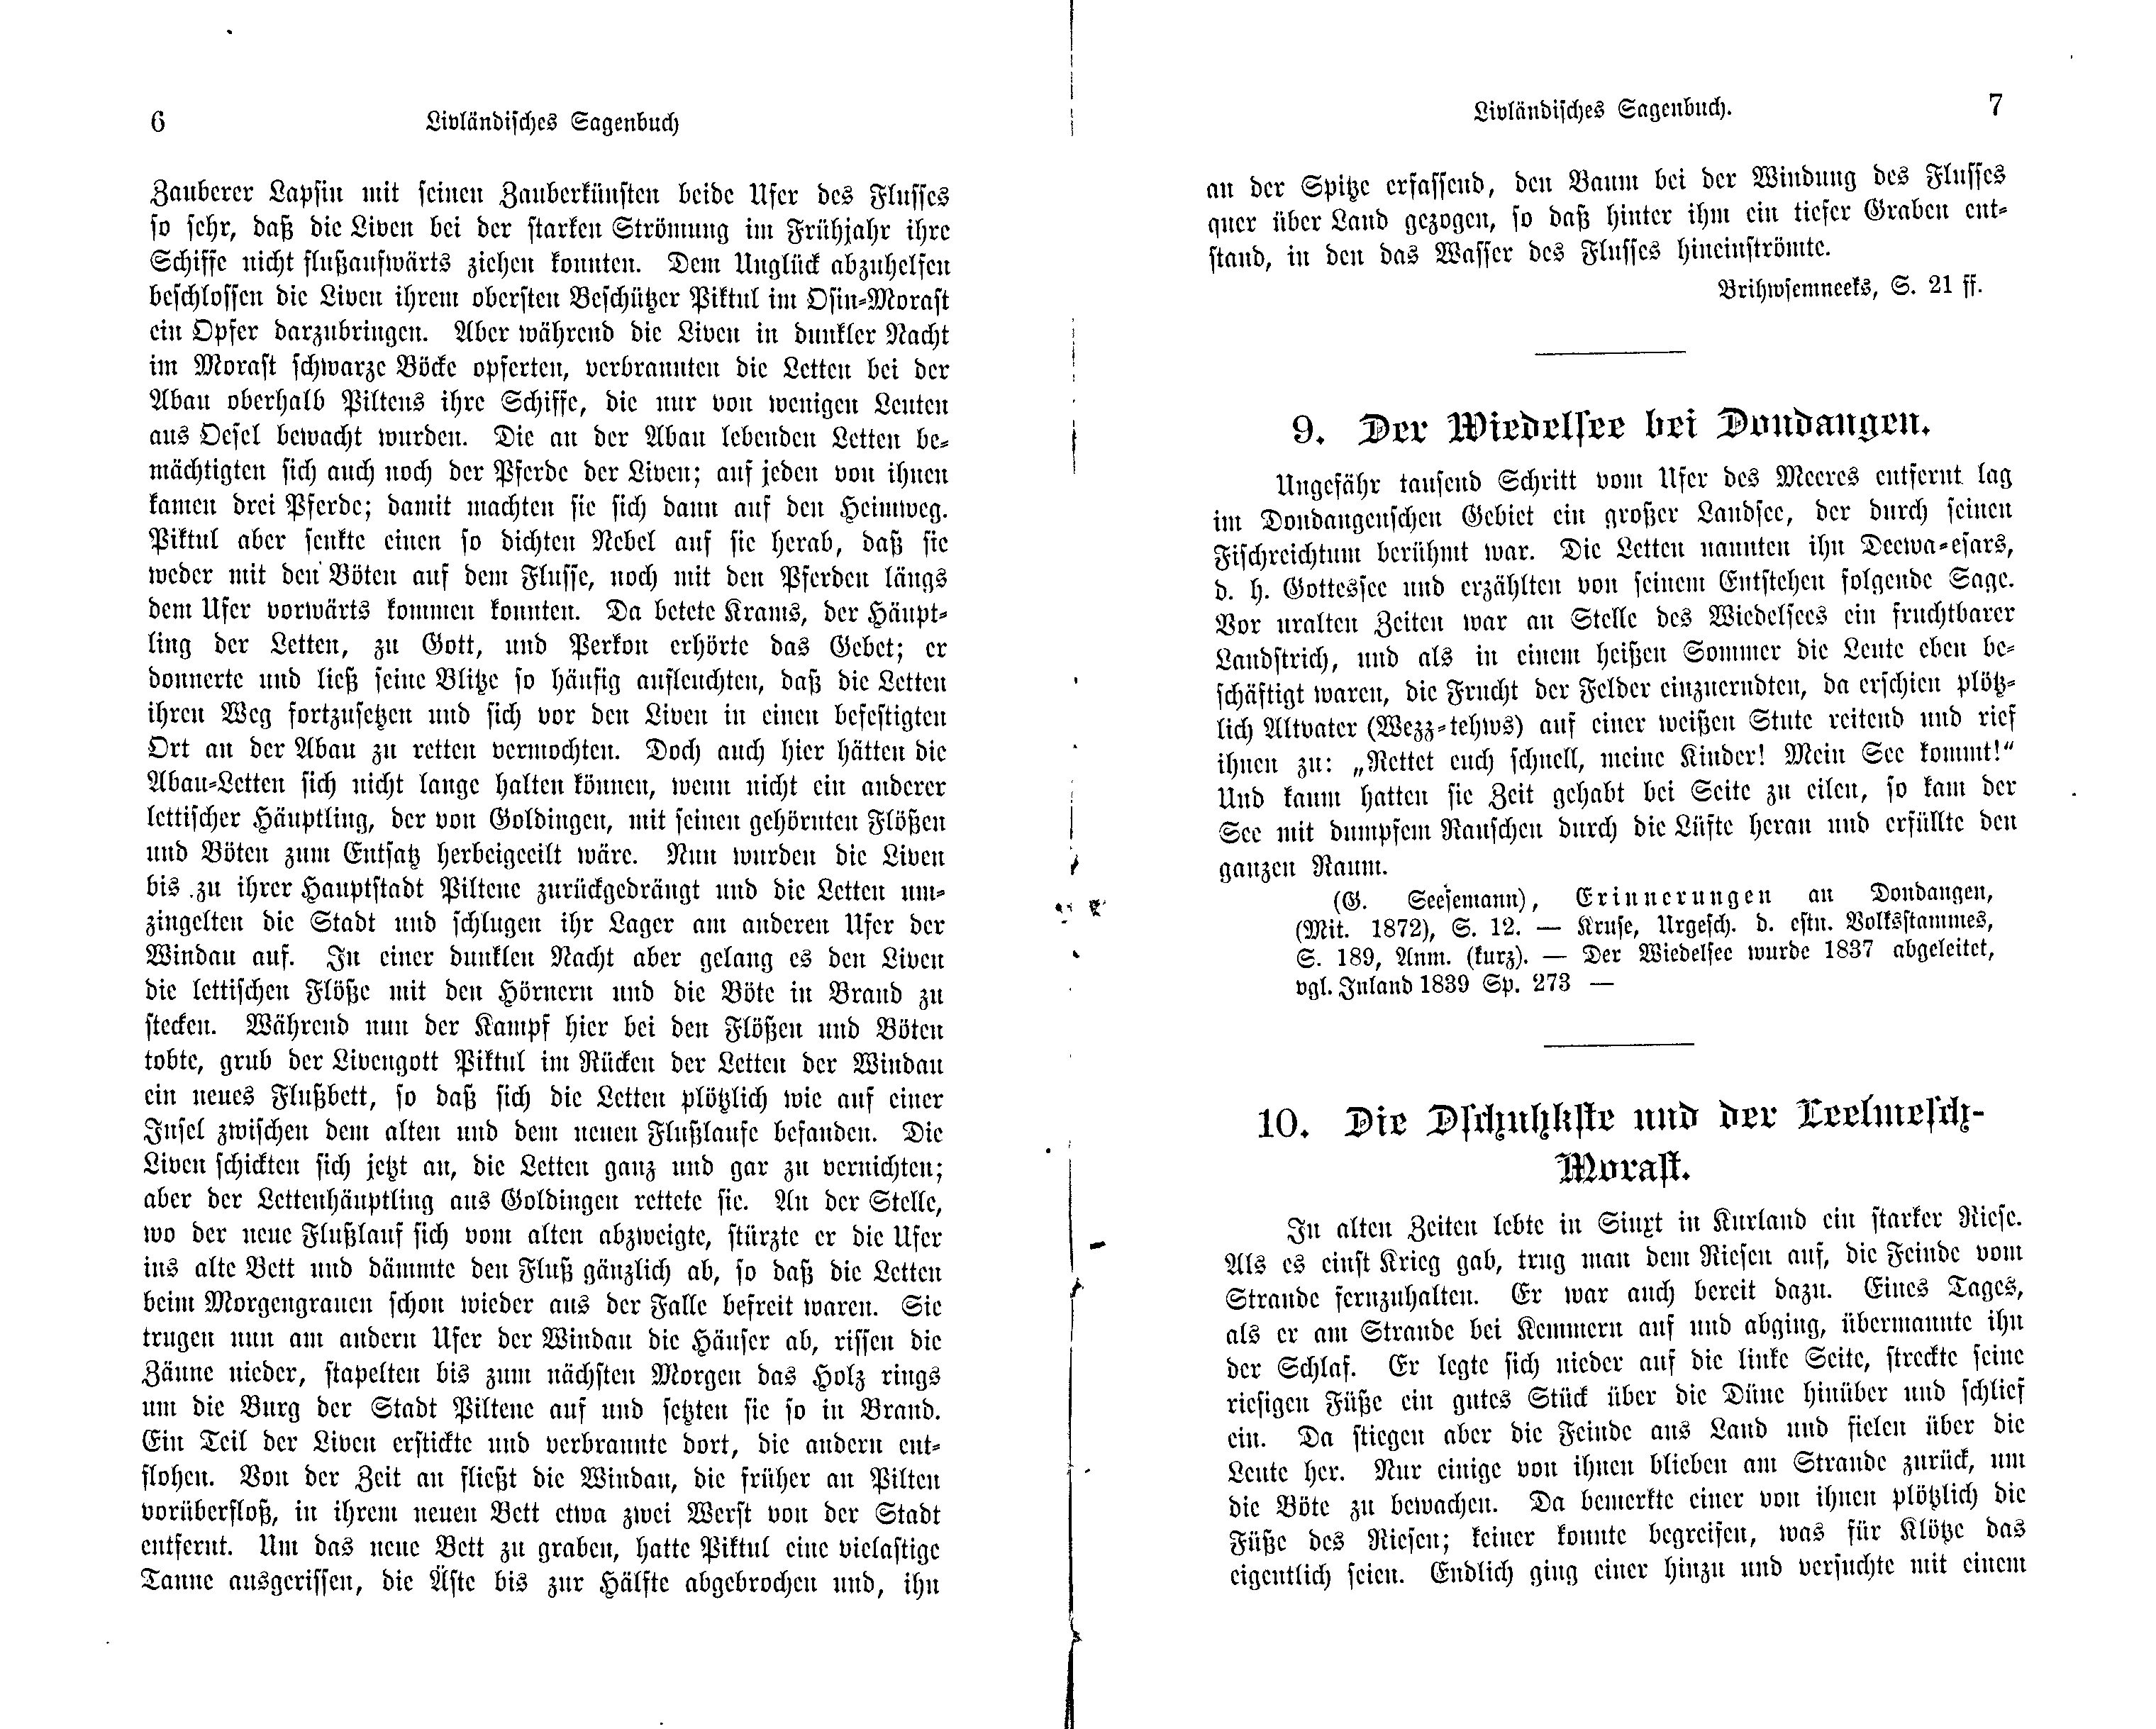 Die Dschuhkste und der Leelmesch-Morast (1897) | 1. (6-7) Main body of text